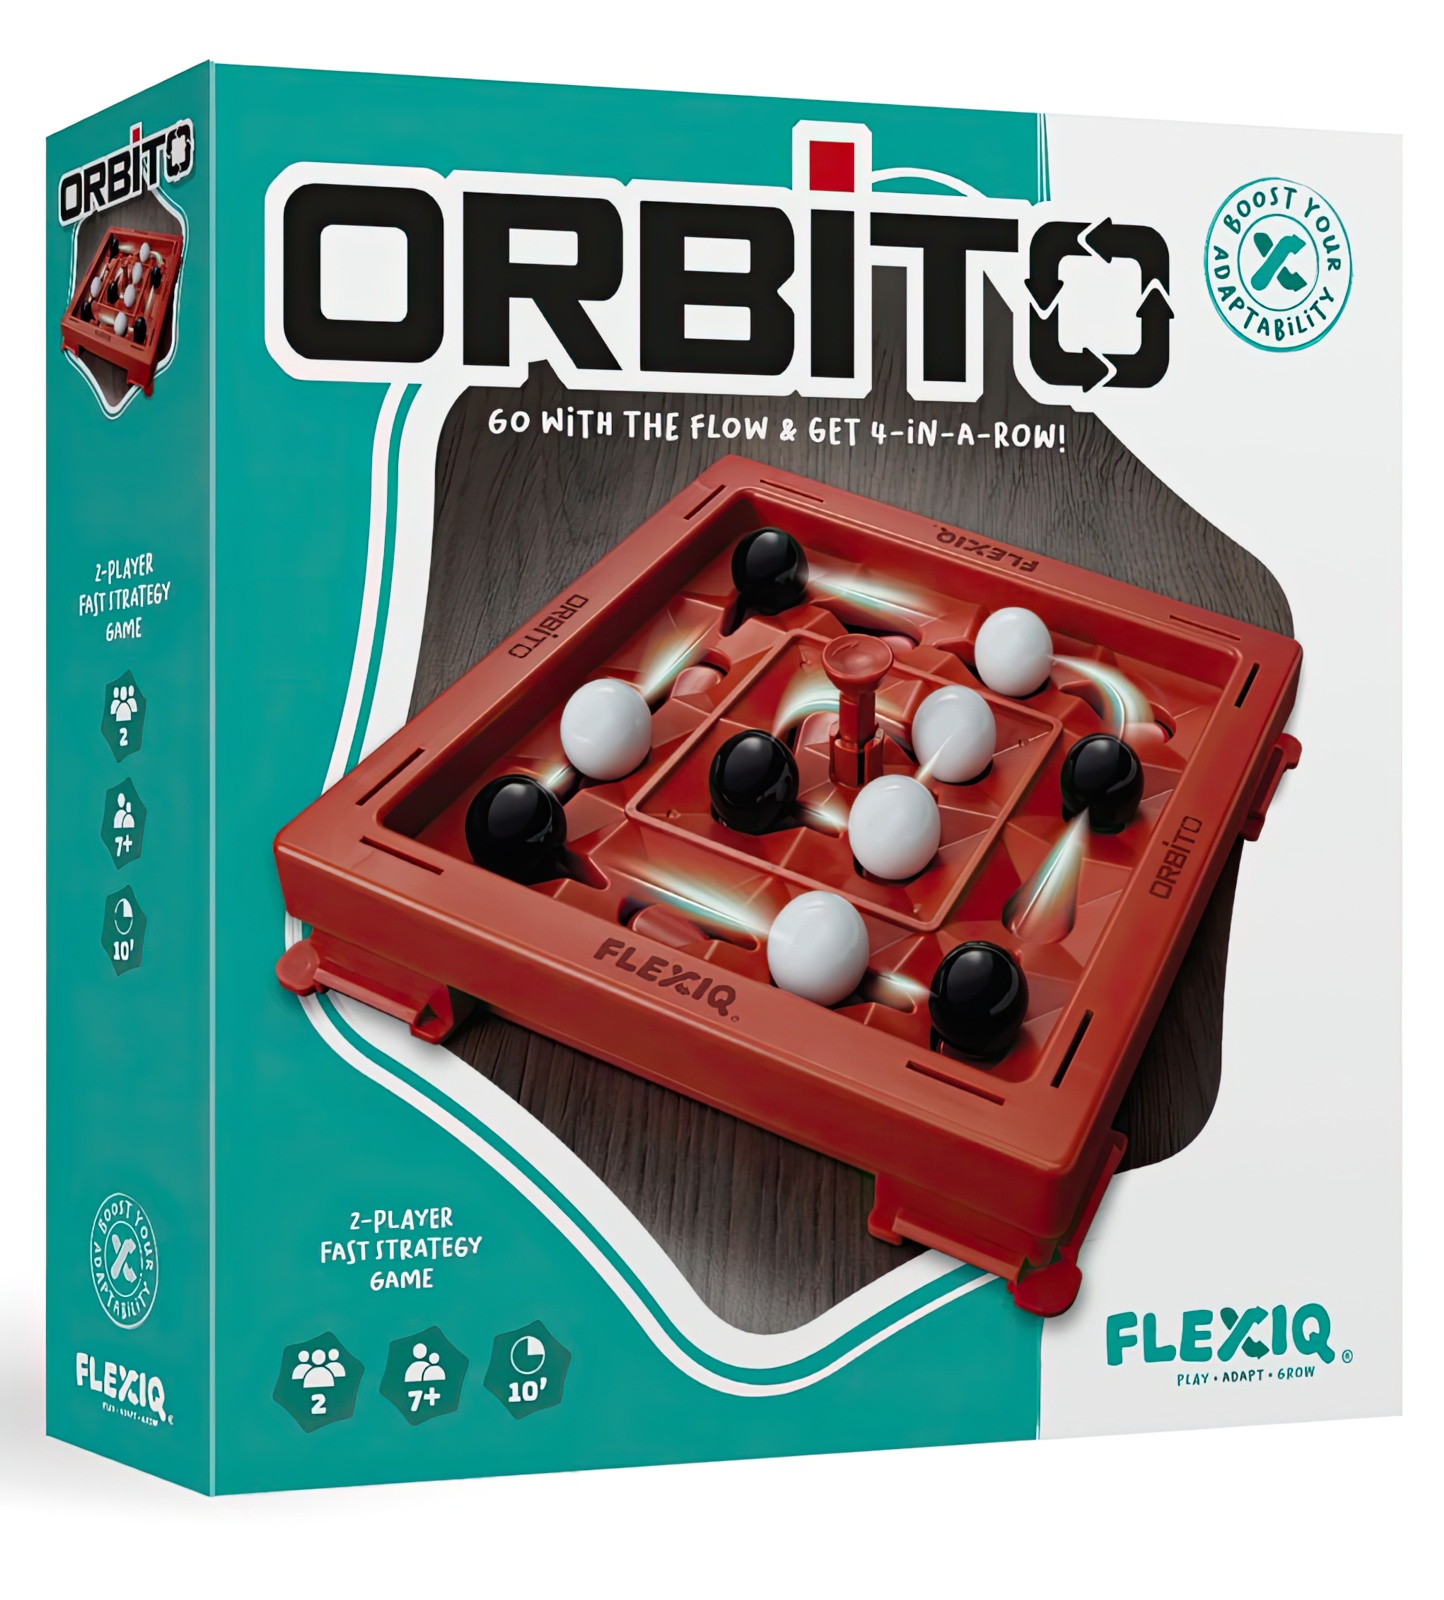 FLEXIQ - Orbito 